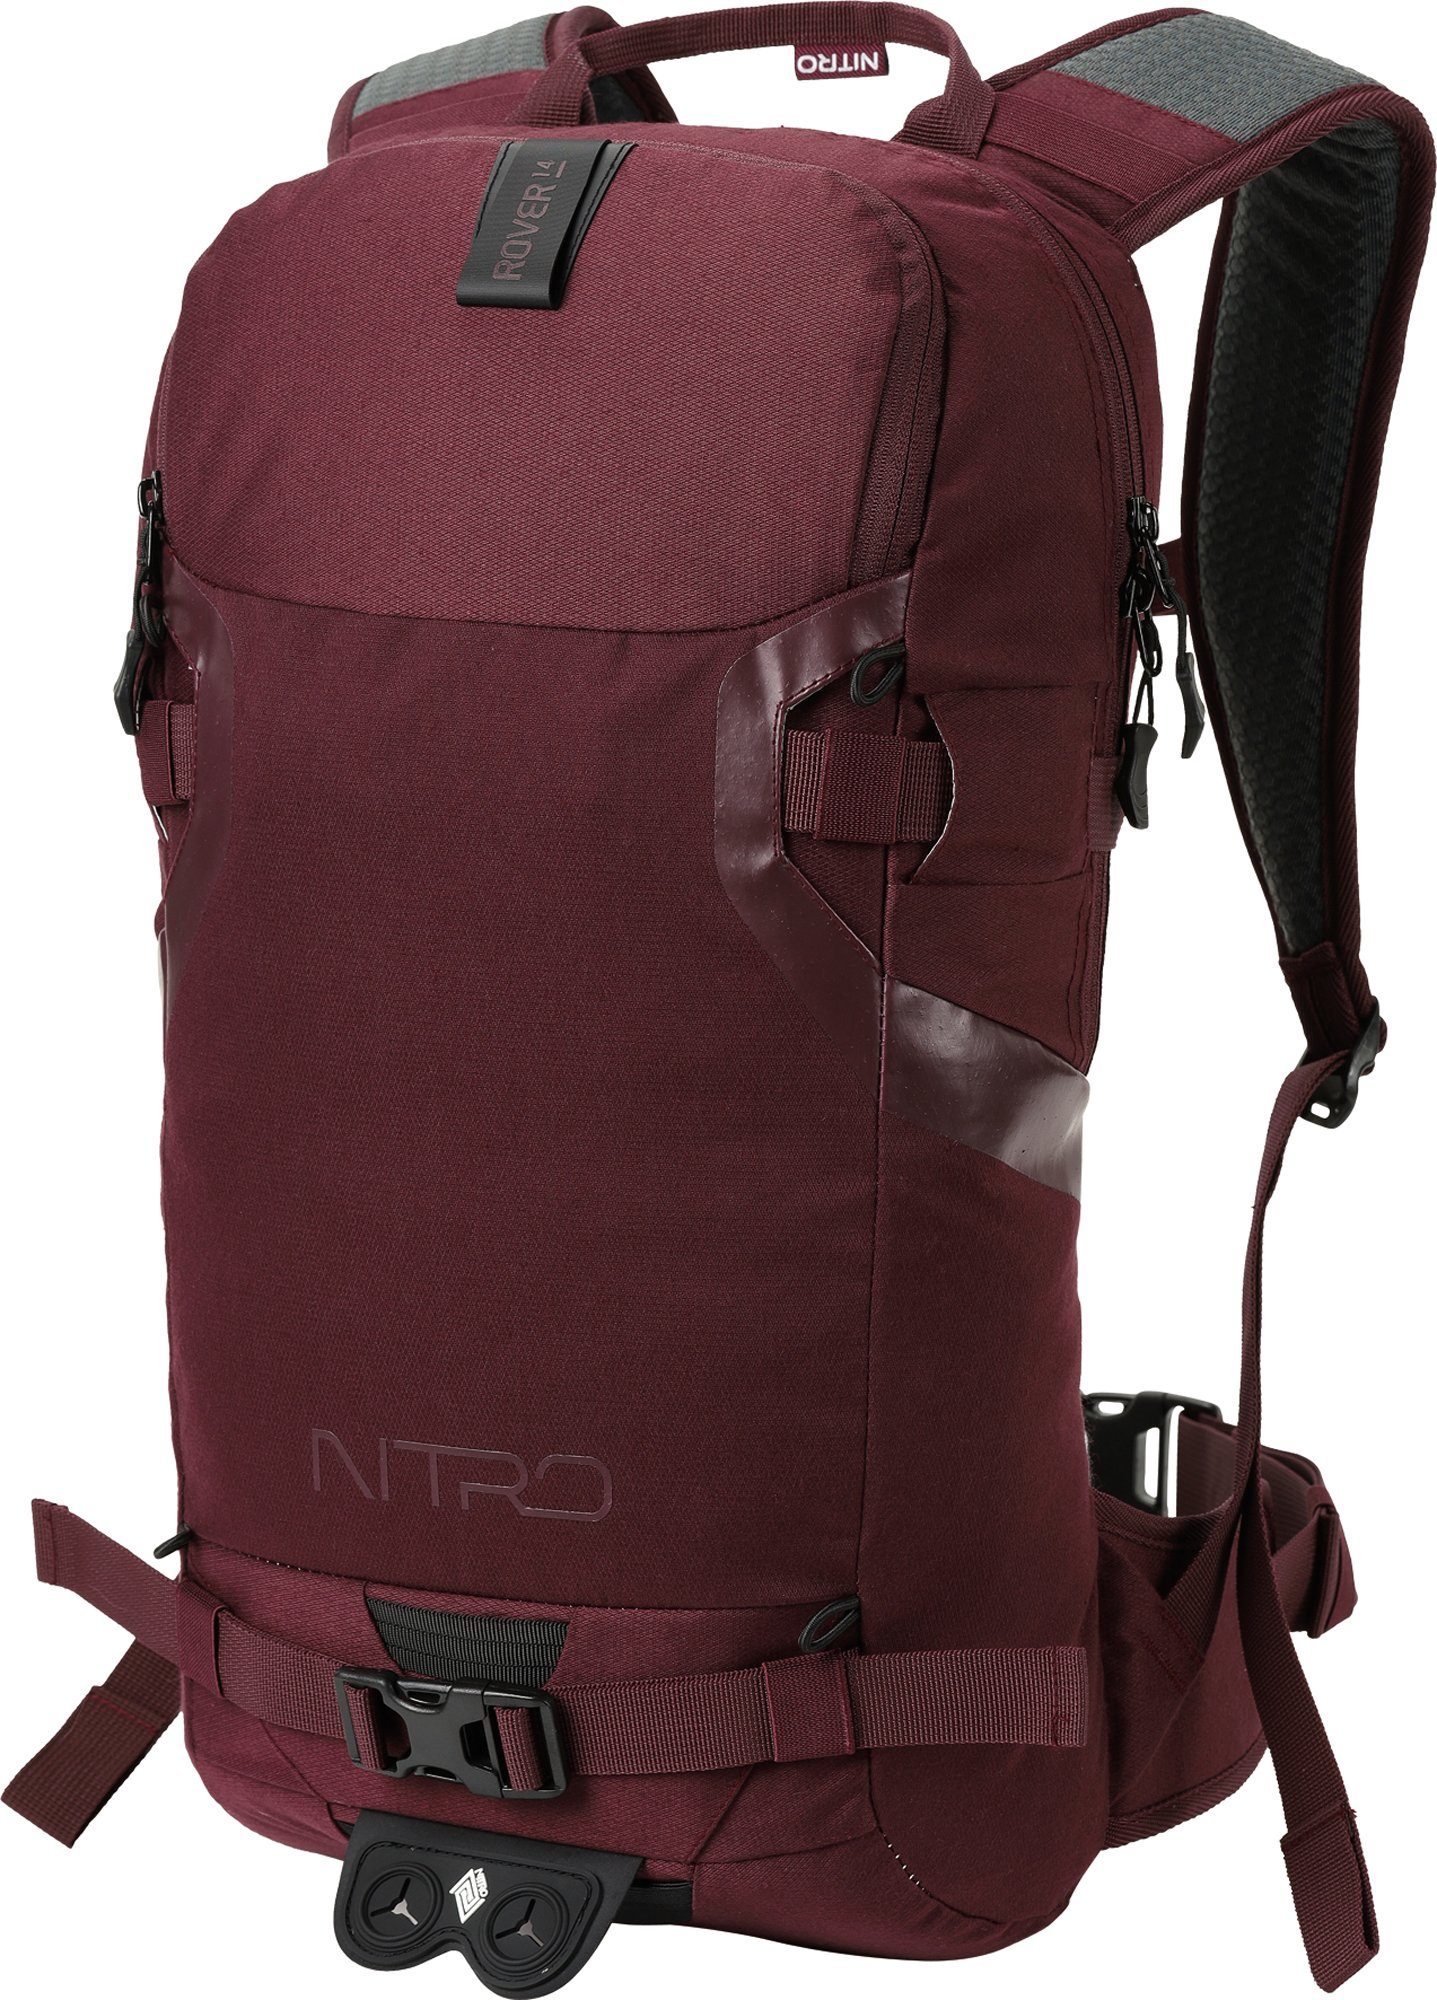 NITRO Trekkingrucksack Rover 14, Wine, den speziell Wintersport für konzipiert